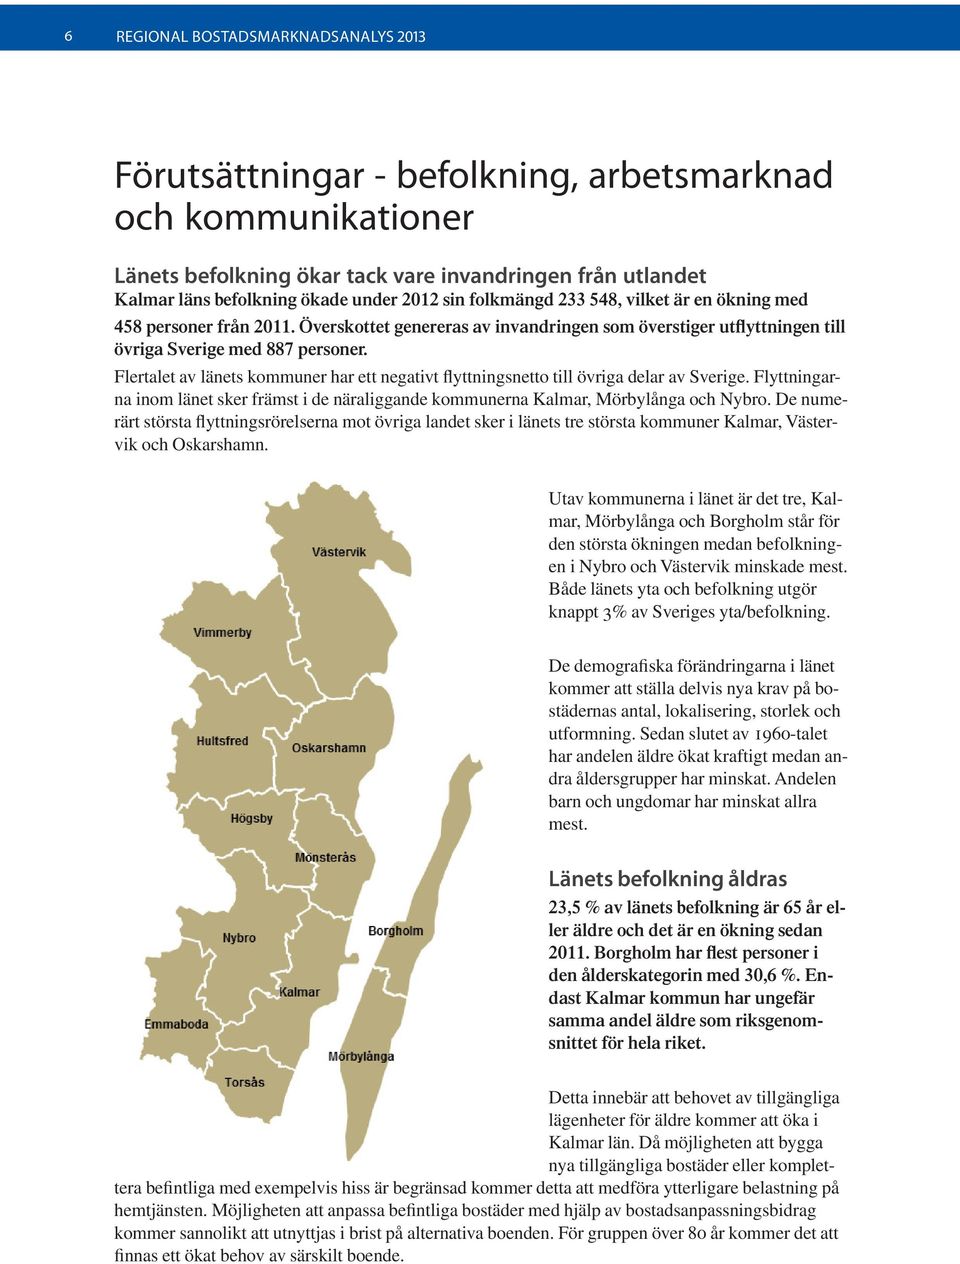 Flertalet av länets kommuner har ett negativt flyttningsnetto till övriga delar av Sverige. Flyttningarna inom länet sker främst i de näraliggande kommunerna Kalmar, Mörbylånga och Nybro.